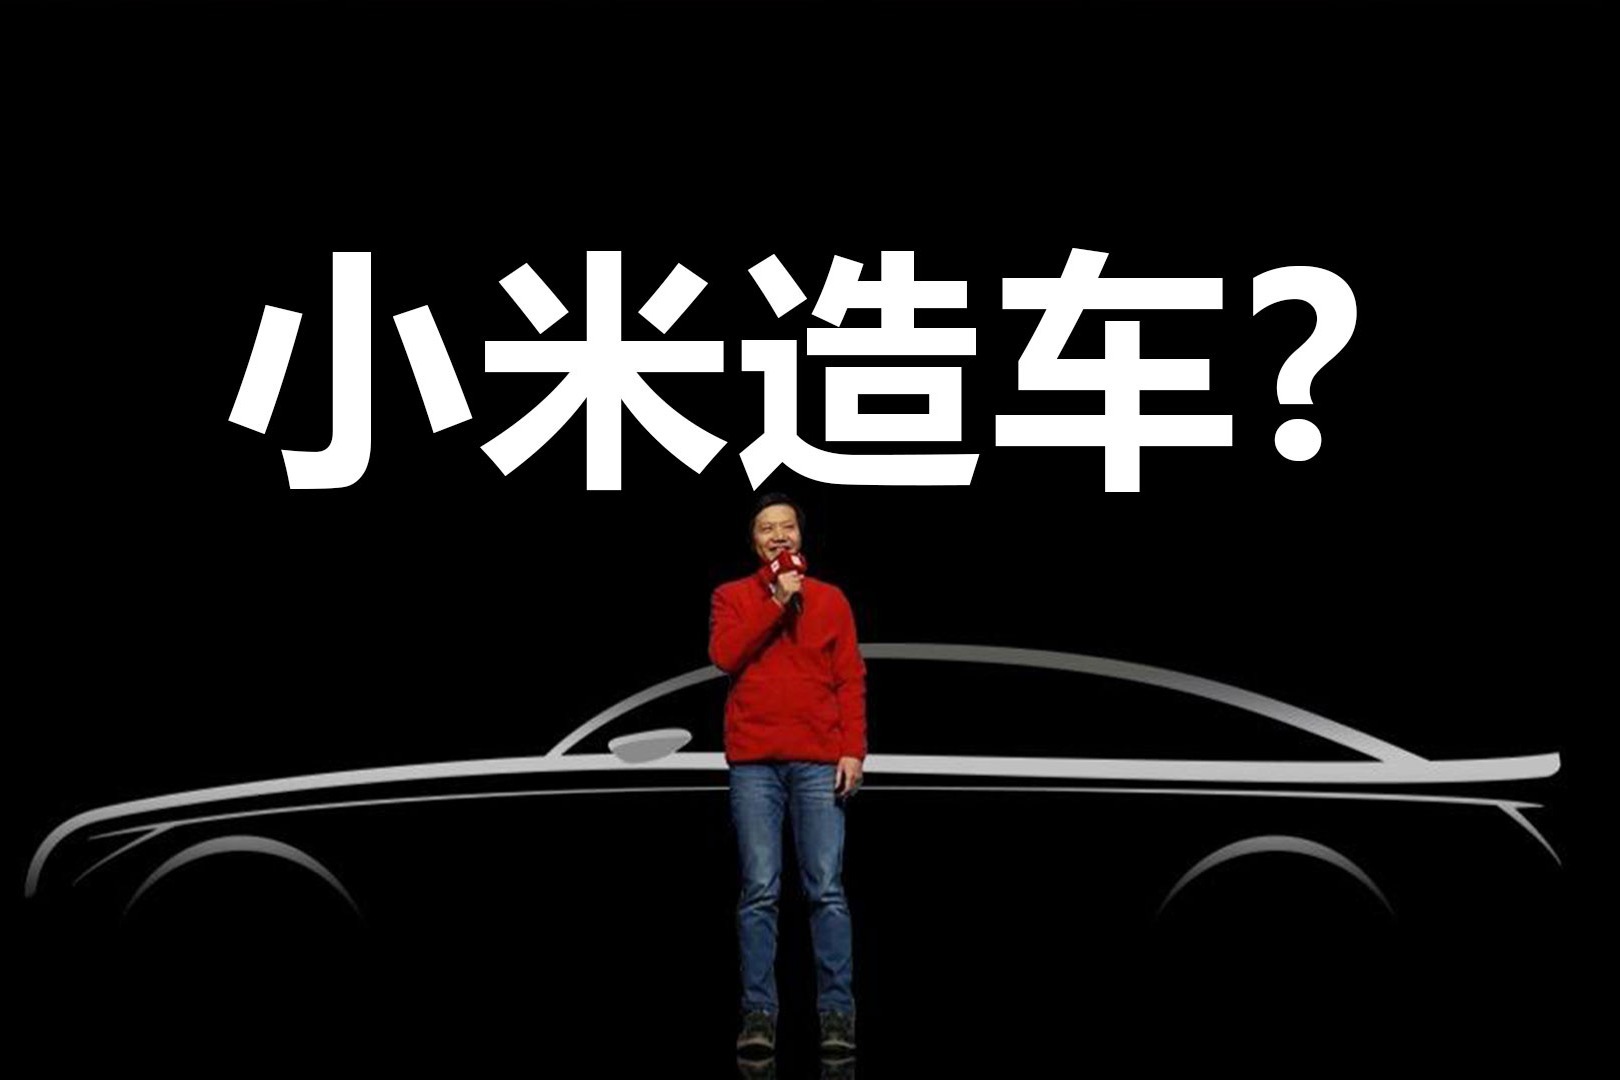 雷军：小米汽车SU7，跨越登场 | 小米汽车技术发布会全程回顾|腕表之家xbiao.com